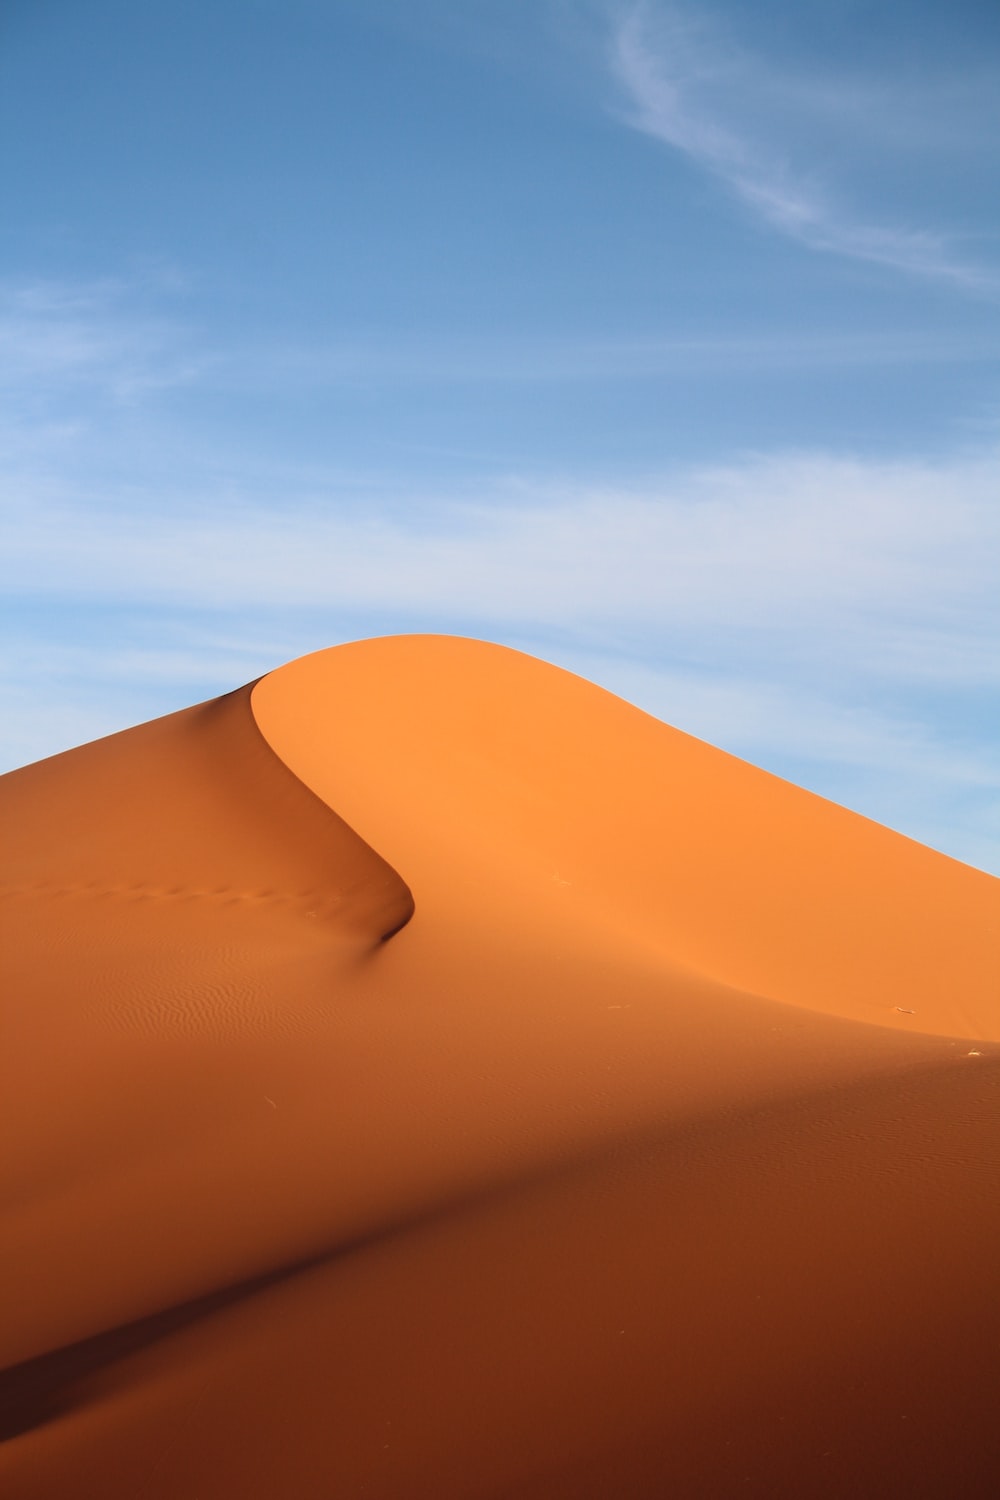 Namib Desert Picture. Download Free Image